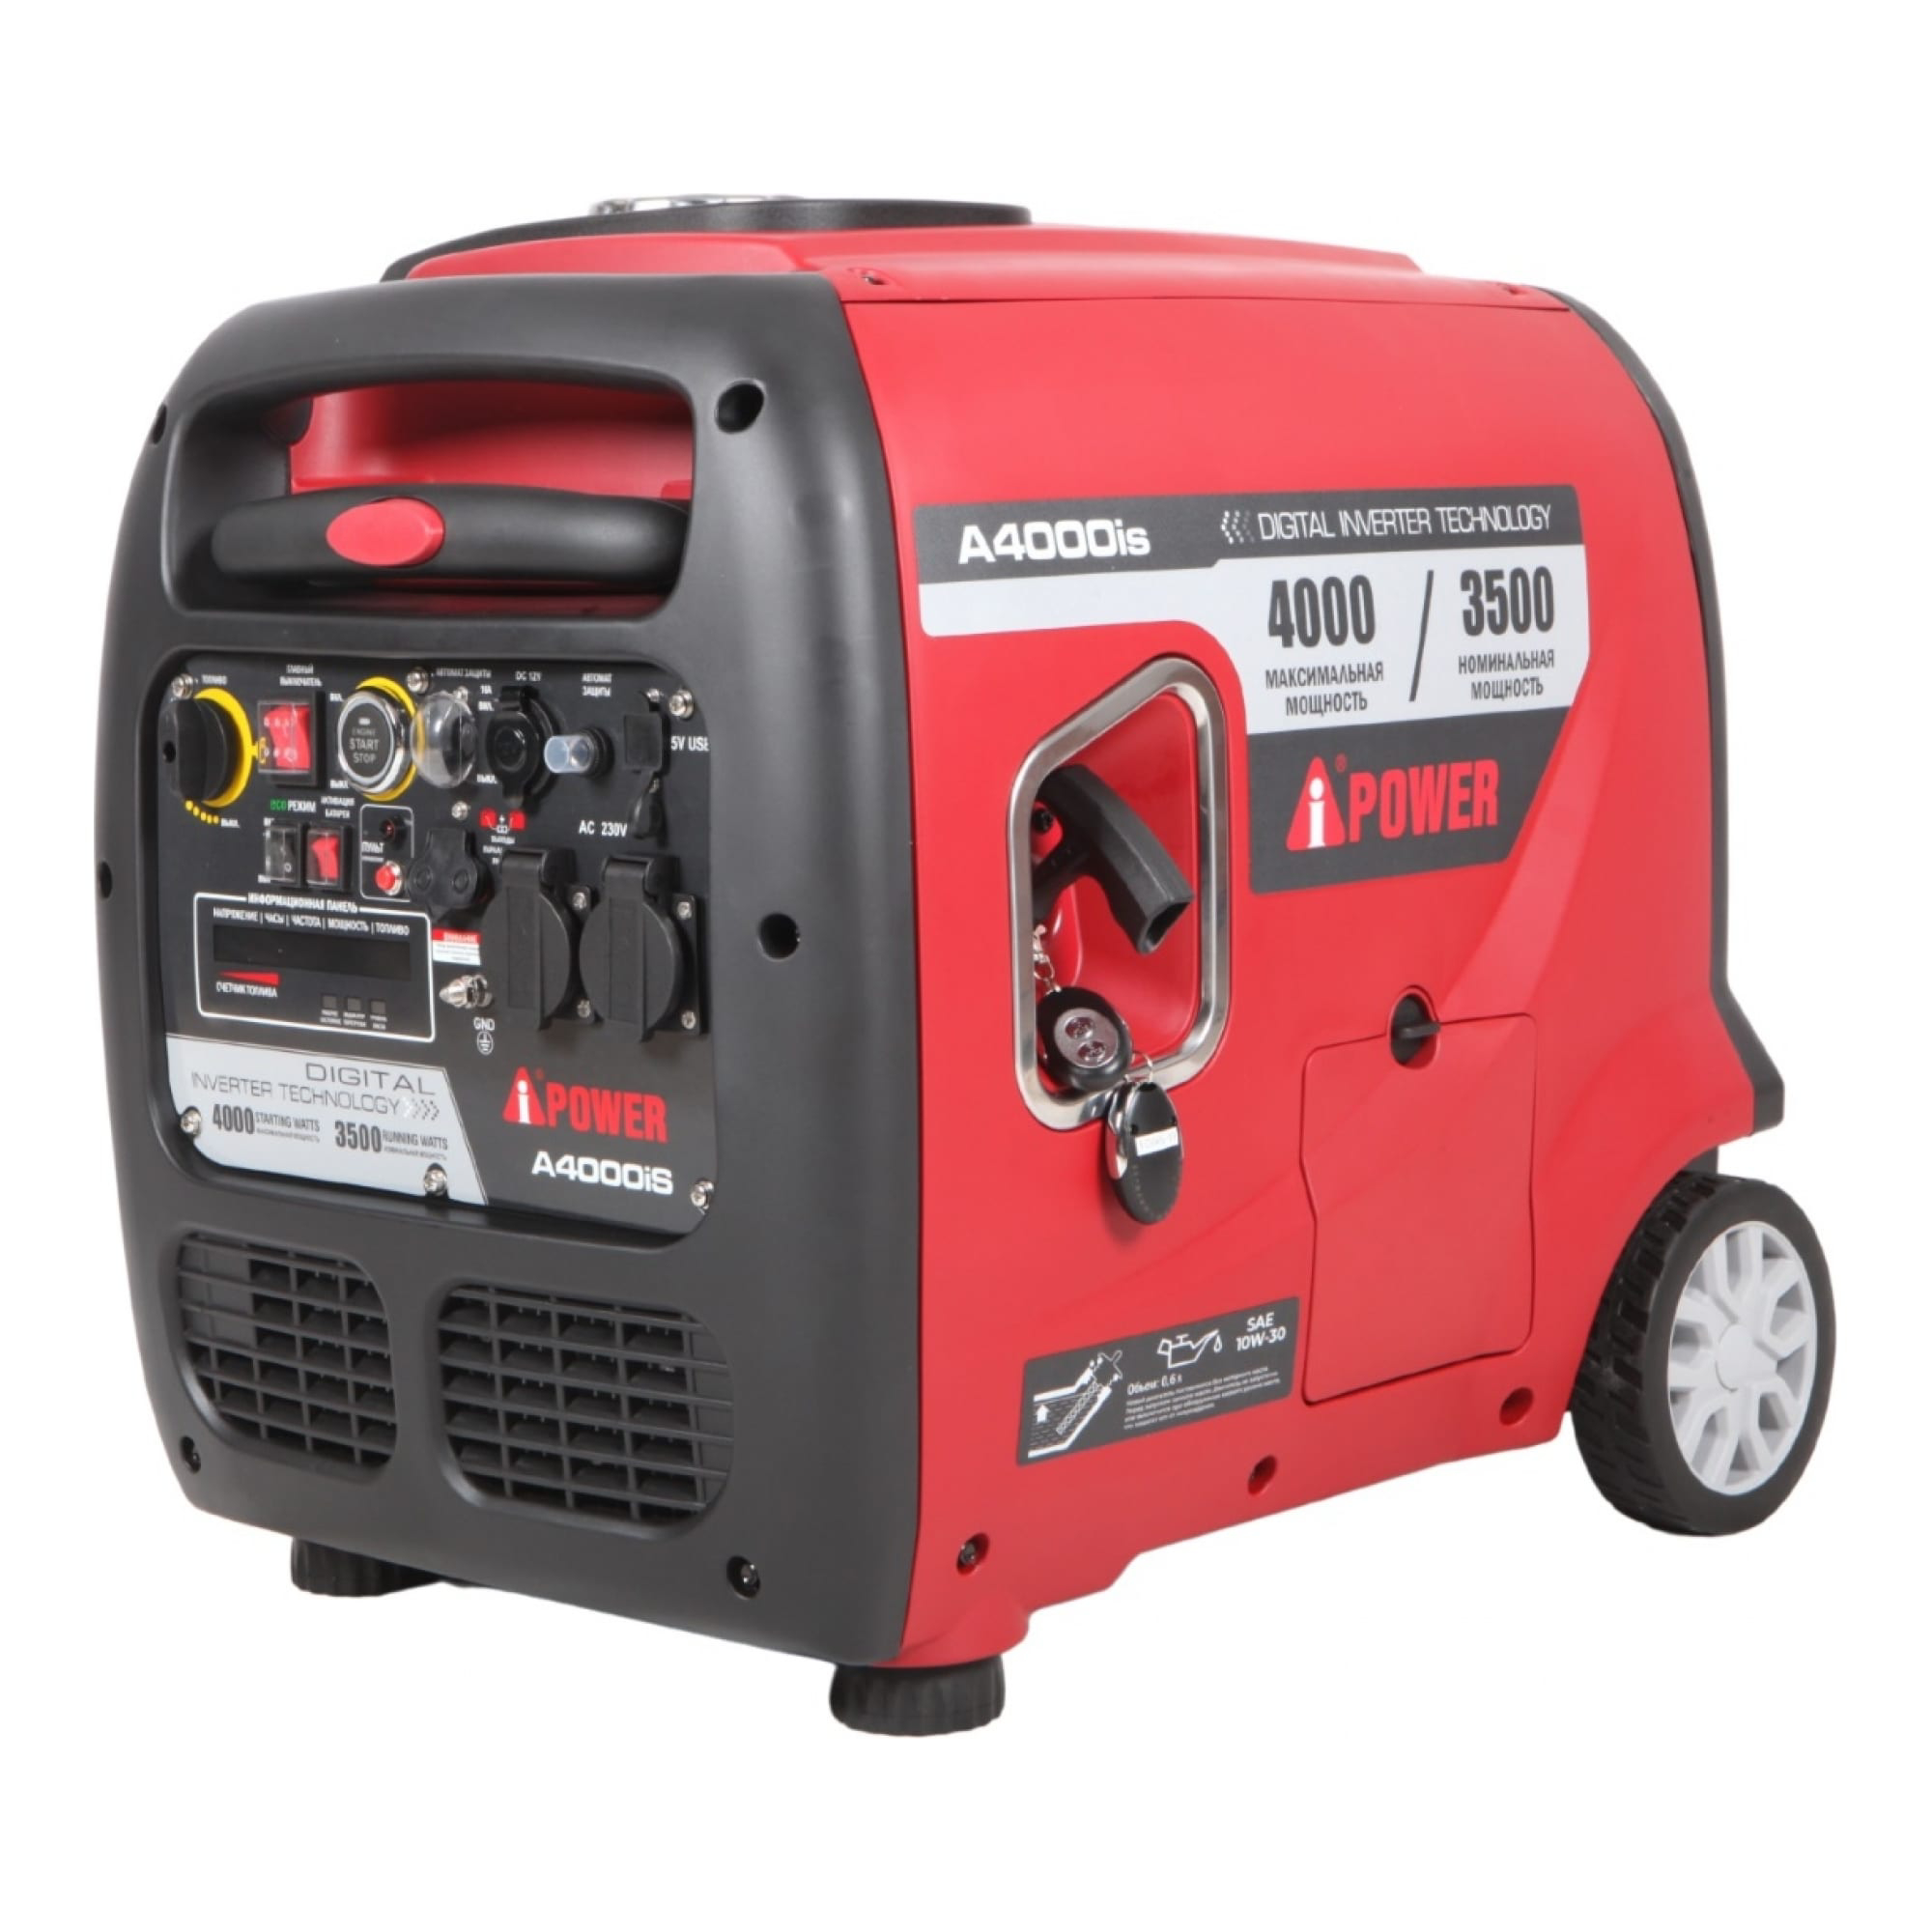 Инверторный бензиновый генератор A-iPower с электростартером 4 кВт (A400IS), цвет красный